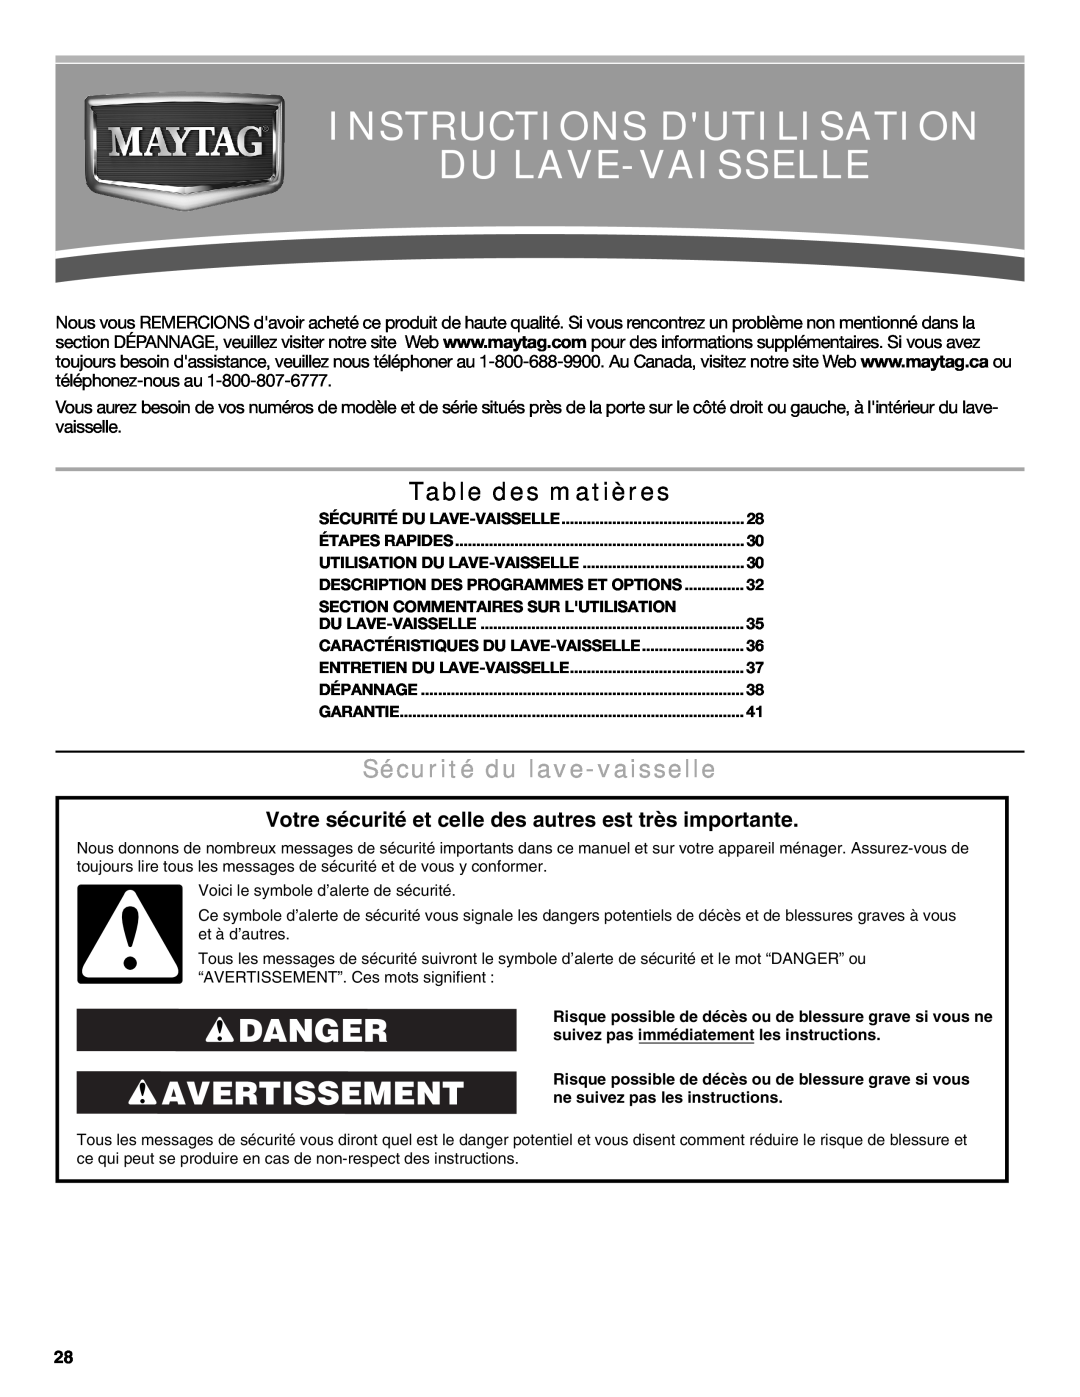 Maytag MDB6600WH warranty Instructions Dutilisation Du Lave-Vaisselle, Danger Avertissement, Table des matières 